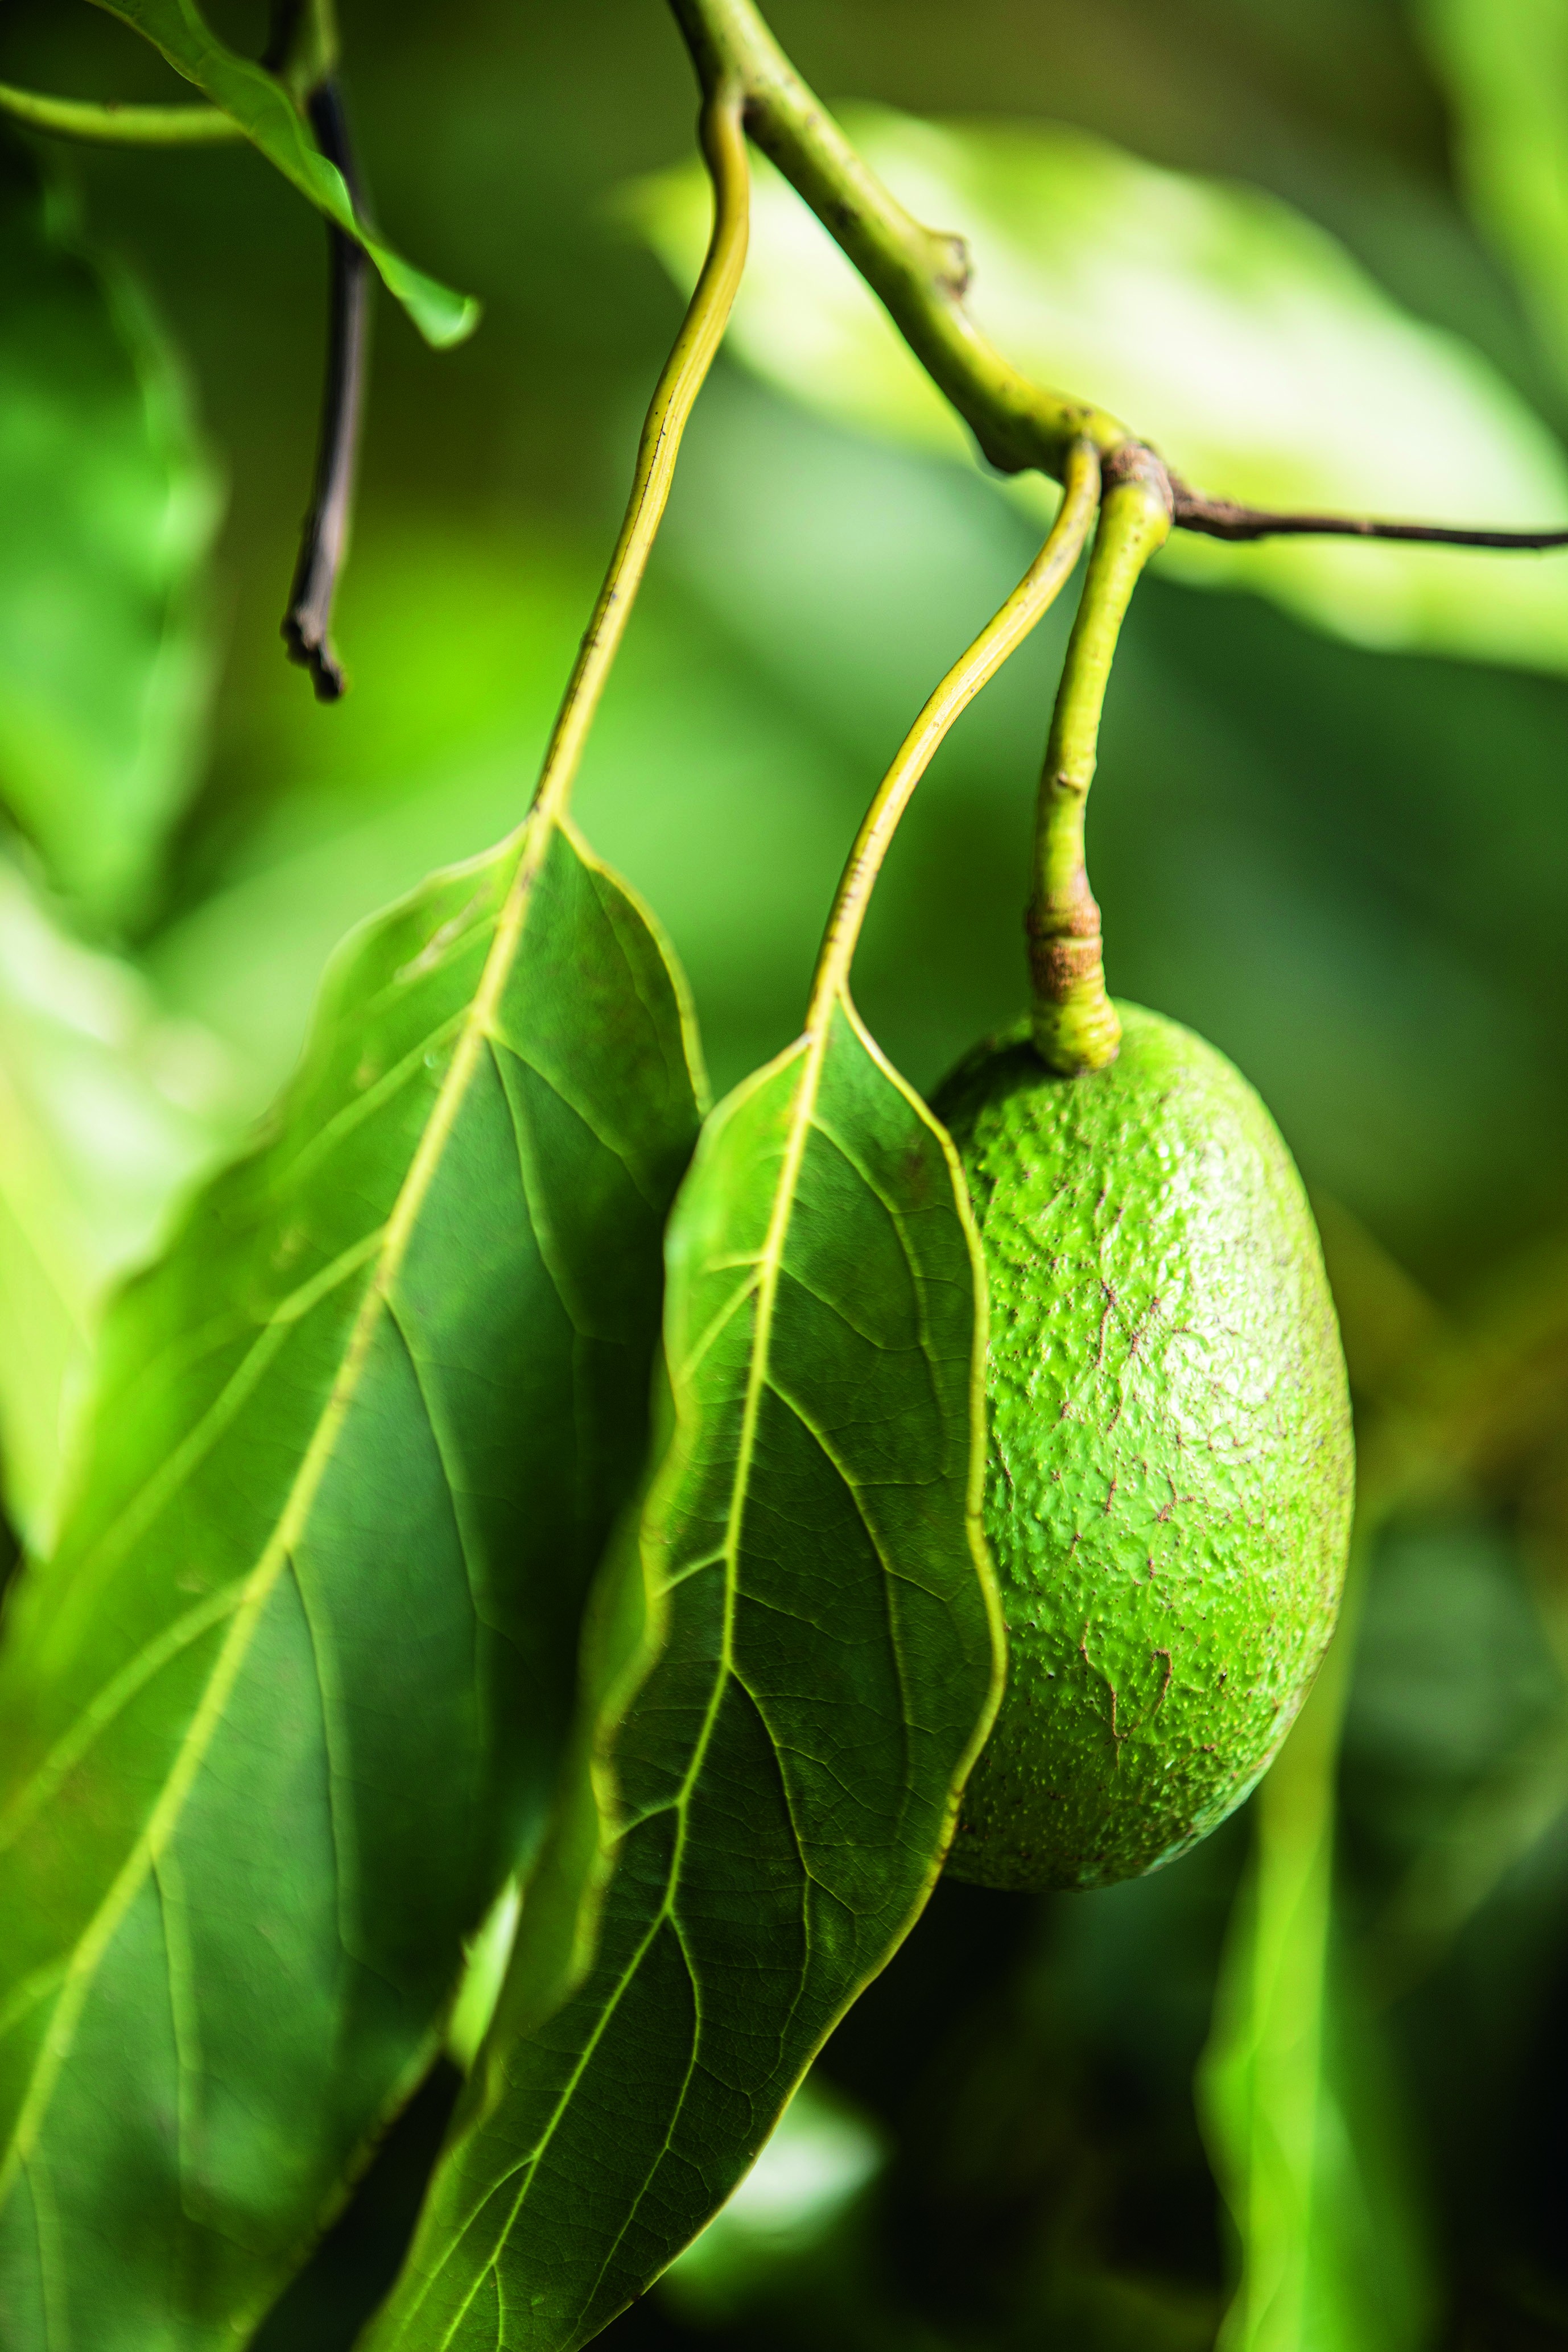 Com nome que significa abacate em inglês, a fruta pequena, de casca escura e grossa e polpa cremosa, é rica em gorduras monoinsaturadas (Foto: Luiz Maximiano)